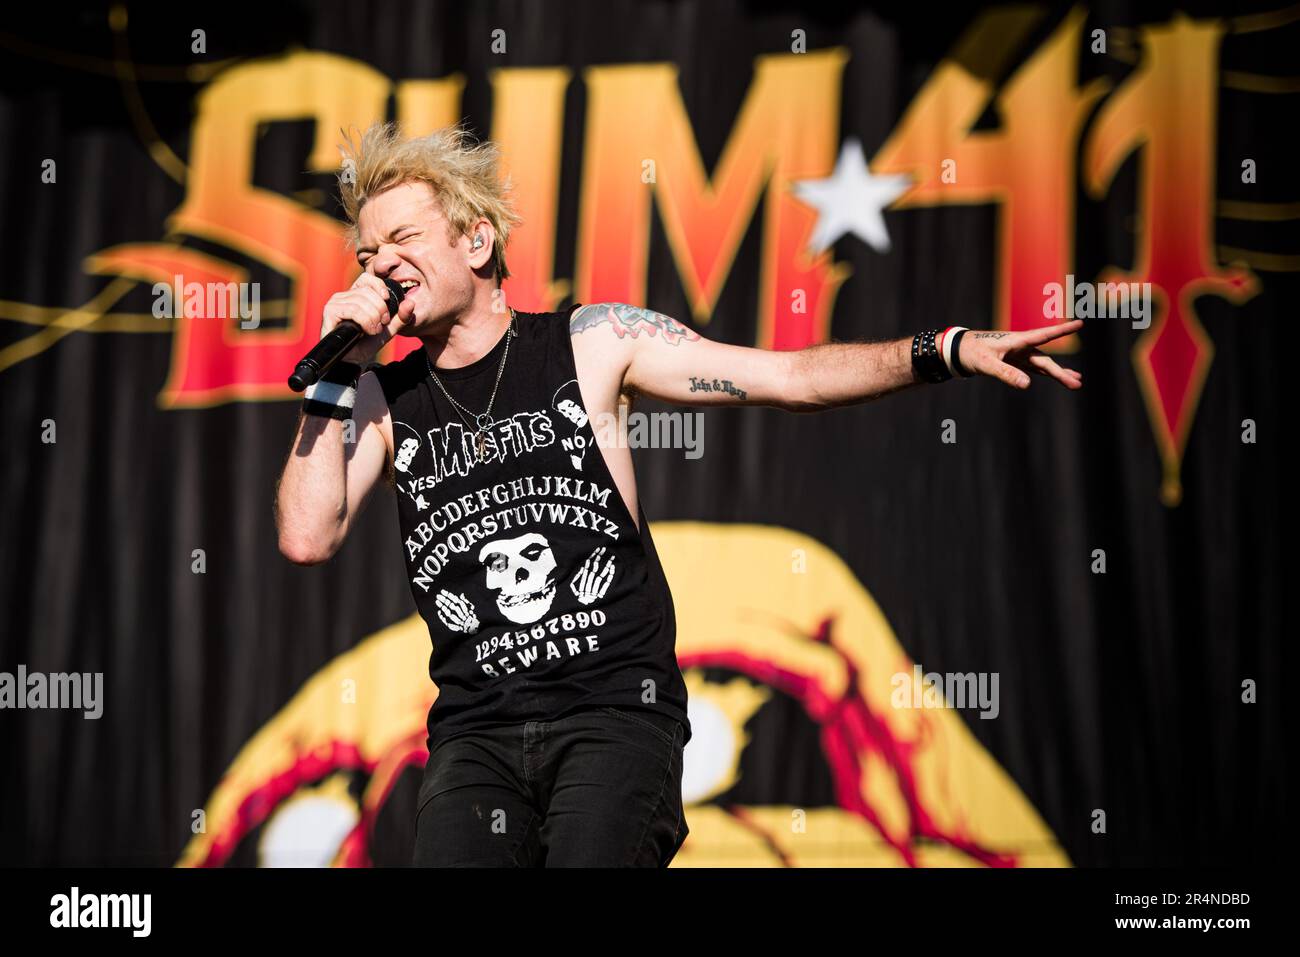 FIRENZE, ITALIA, FIRENZE ROCKS FESTIVAL: Deryck Whibley, cantante e fondatore della band punk rock canadese Sum41, che si esibisce dal vivo sul palco al Firenze Rocks Festival Foto Stock